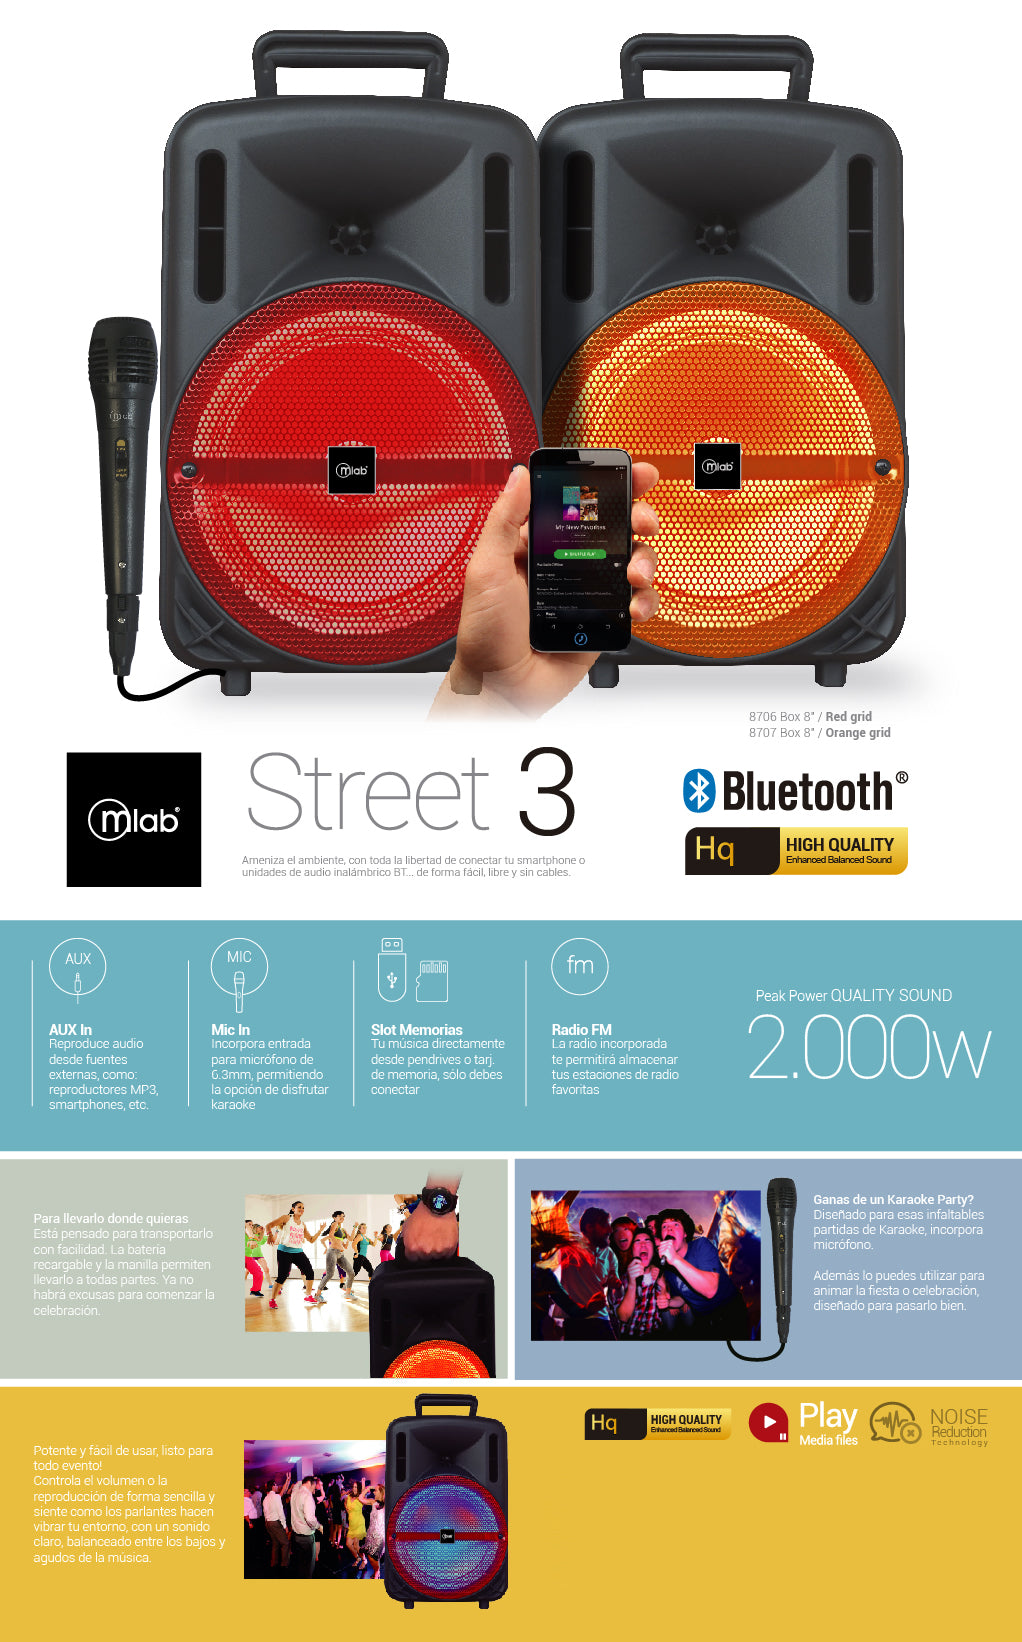 Parlante Bluetooth Street 3 Voice2 Mlab (8706) rojo